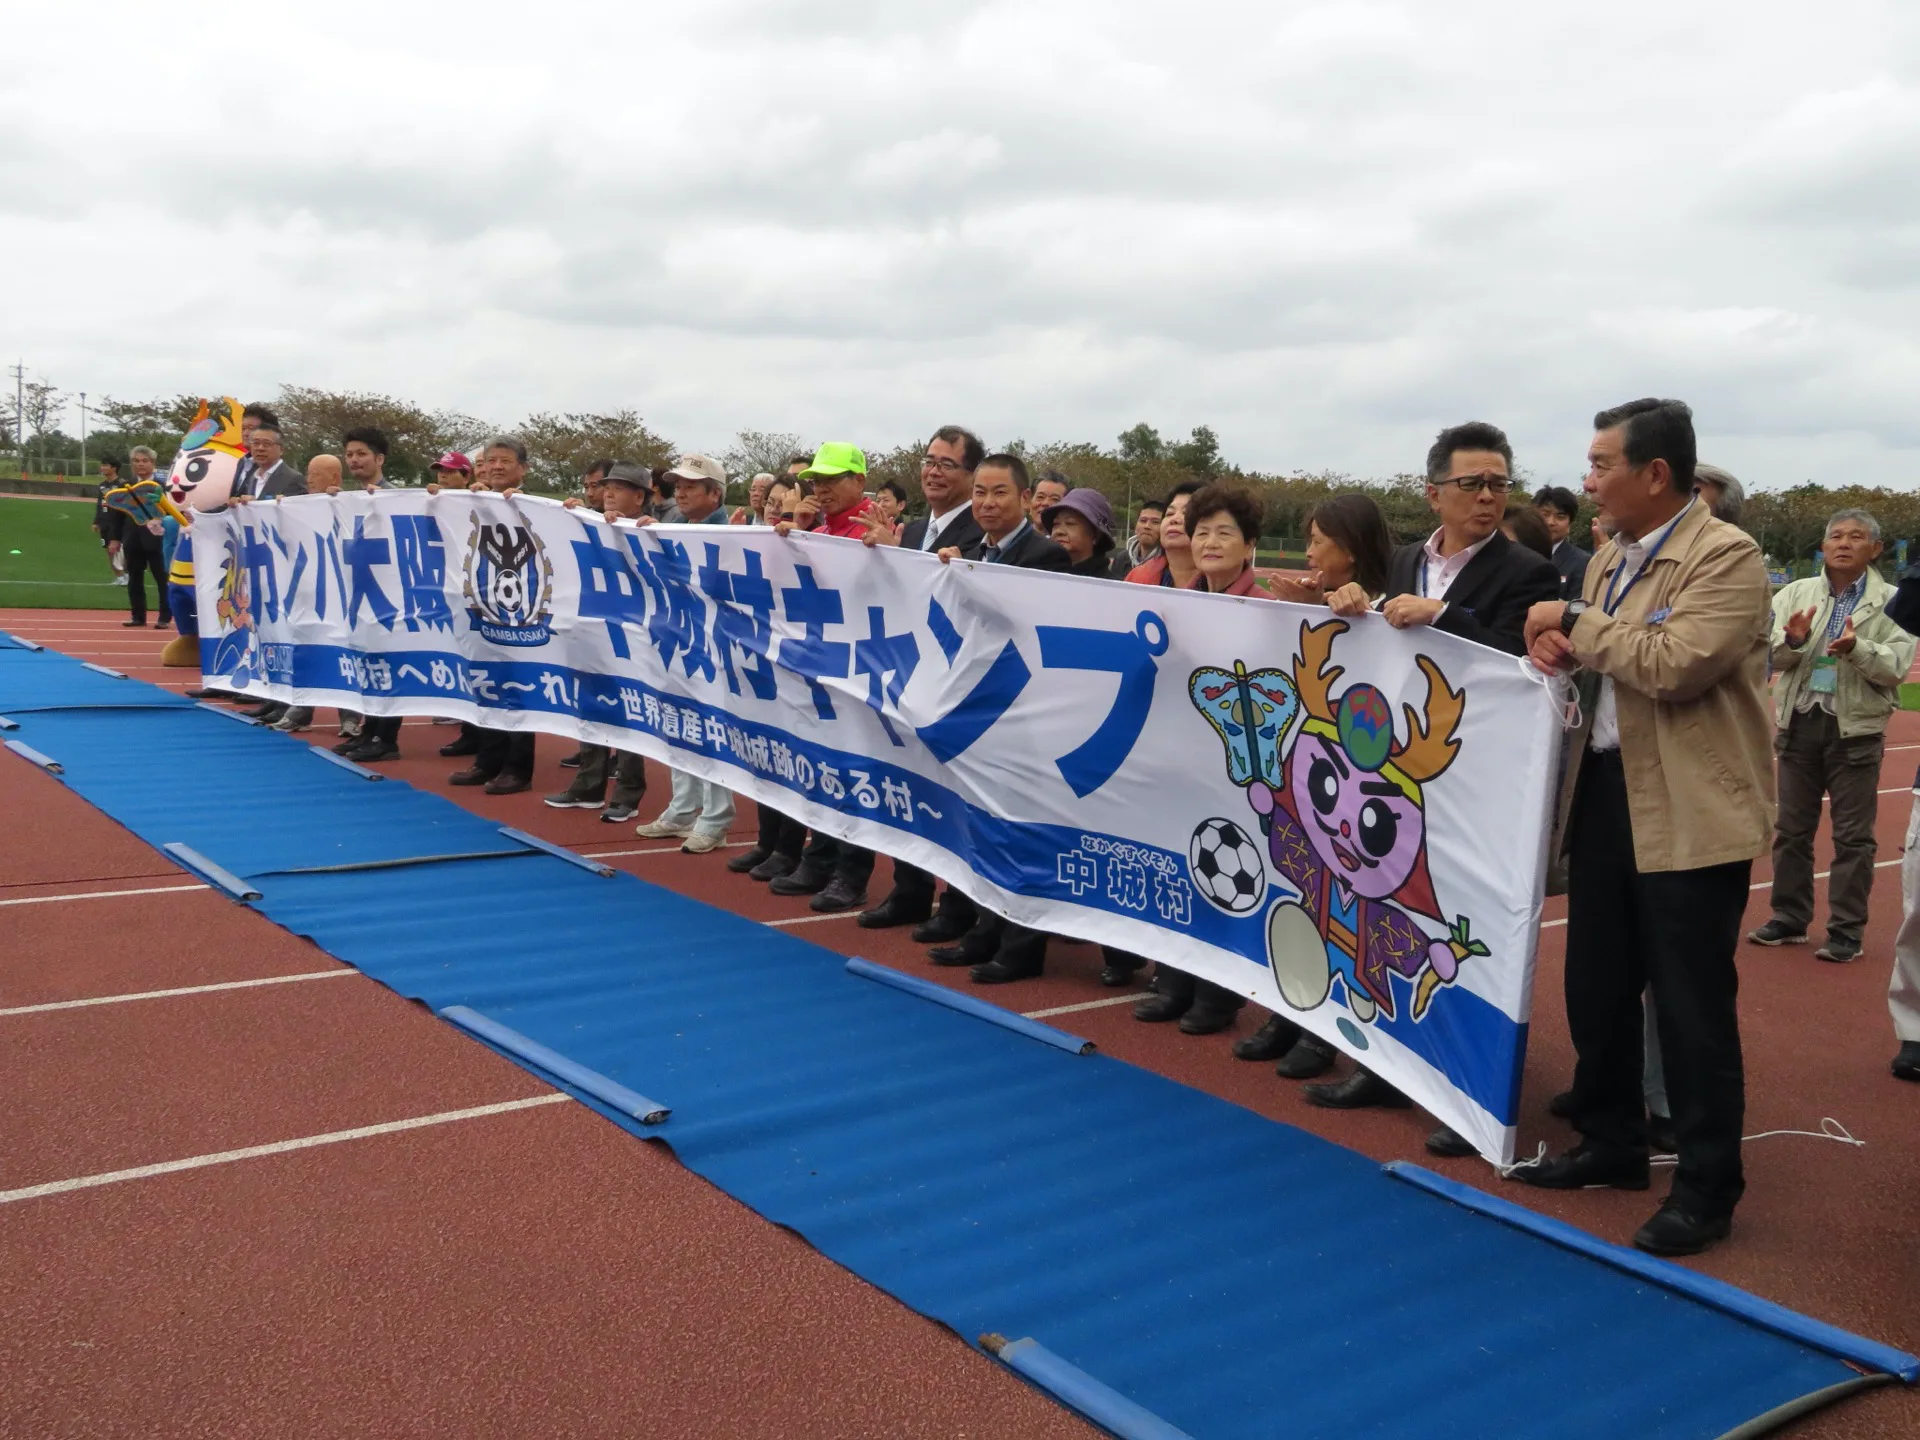 サッカー ガンバ大阪歓迎セレモニーin中城村 スポーツコミッション沖縄